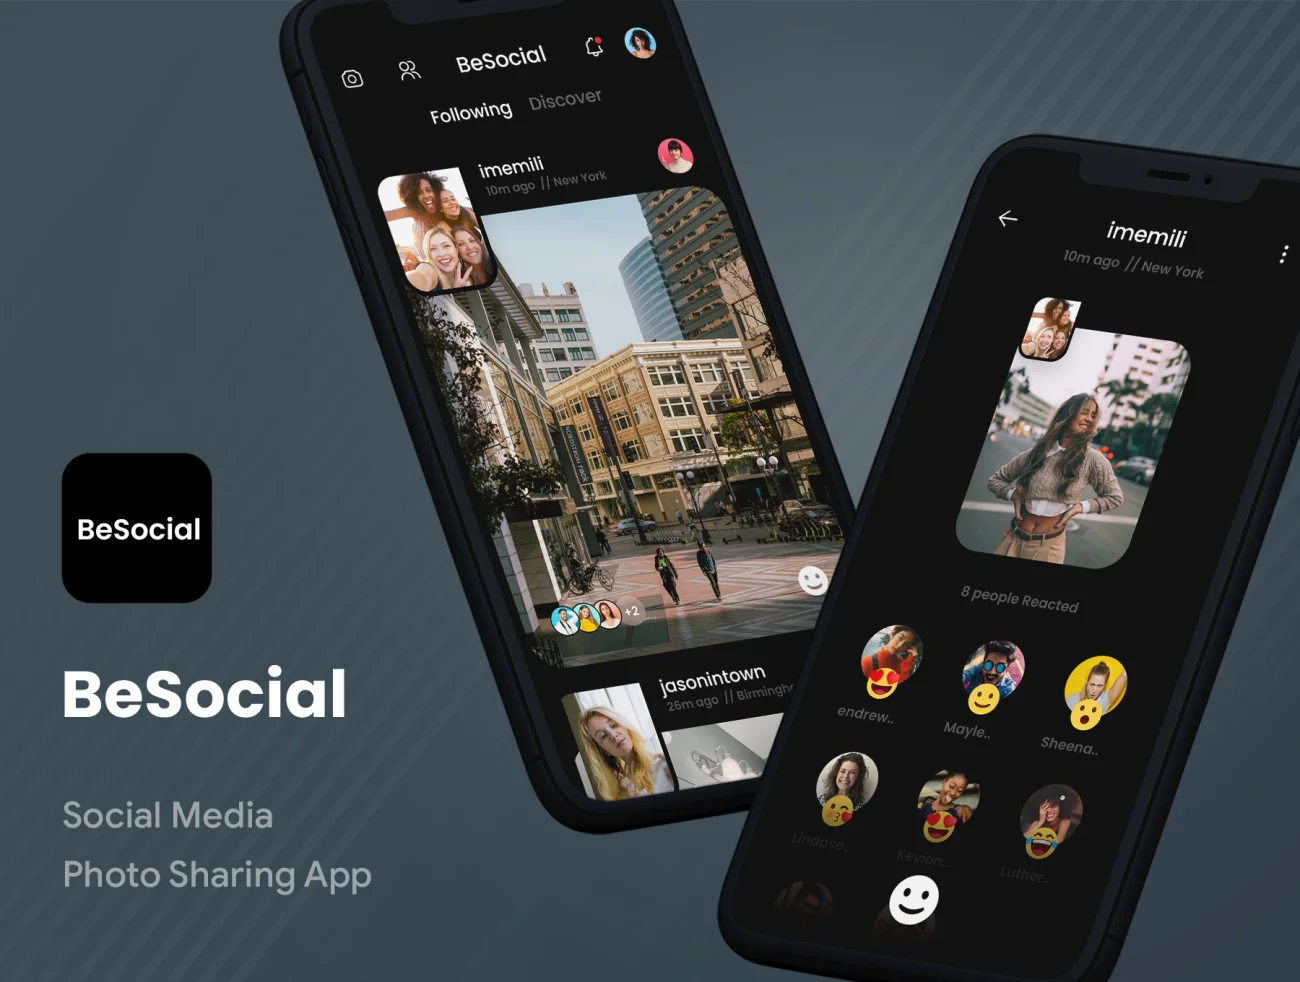 社交照片分享应用UI工具包 BeSocial Media Photo Sharing App .xd-UI/UX、ui套件、主页、介绍、卡片式、图表、应用、播放器、海报、社交-到位啦UI